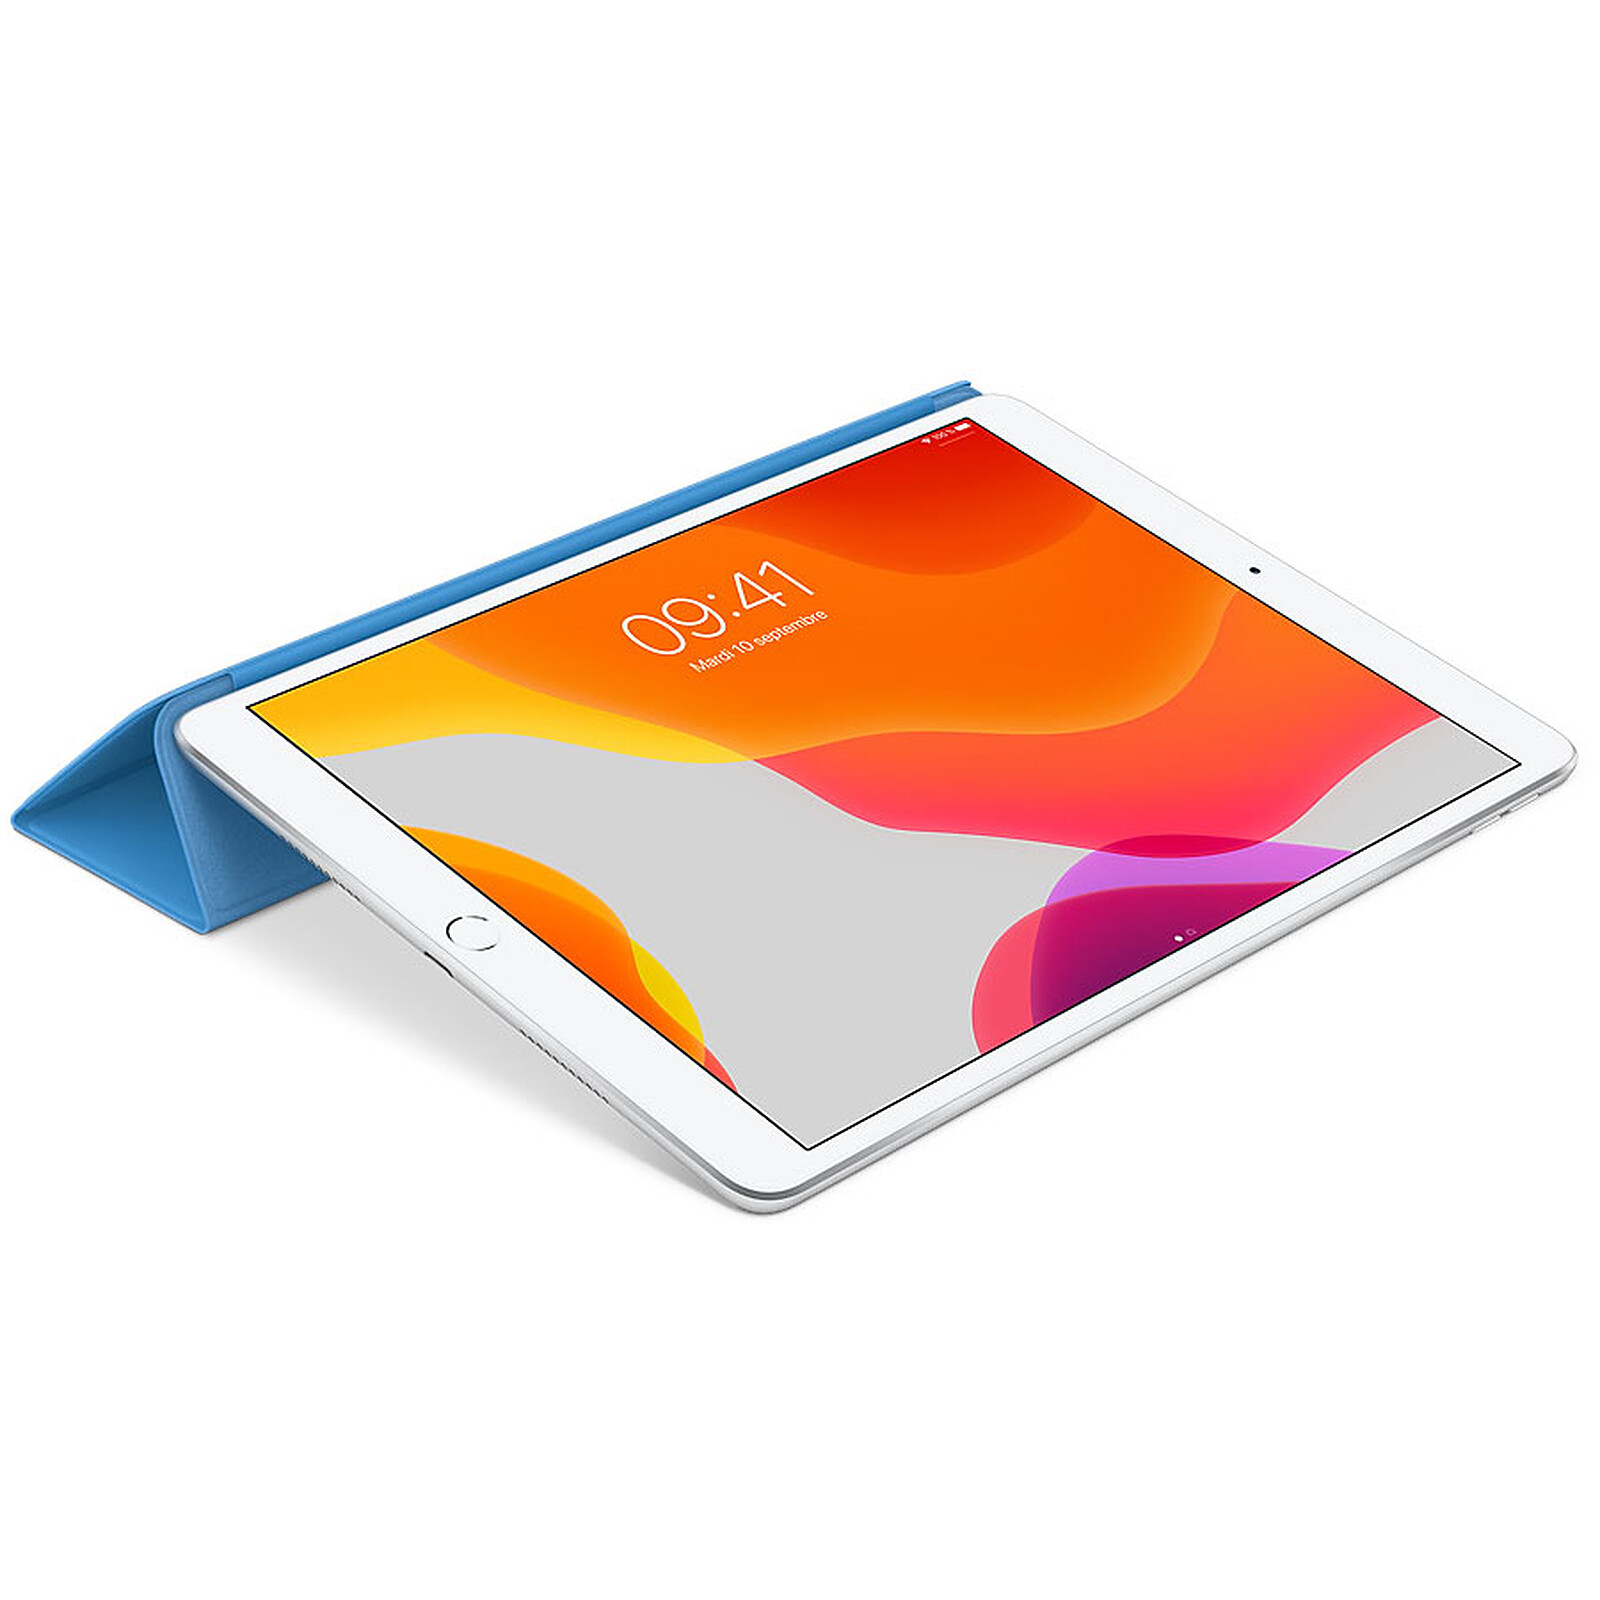 Funda QDOS Folio Muse para iPad Air 10.9 - Azul Transparente